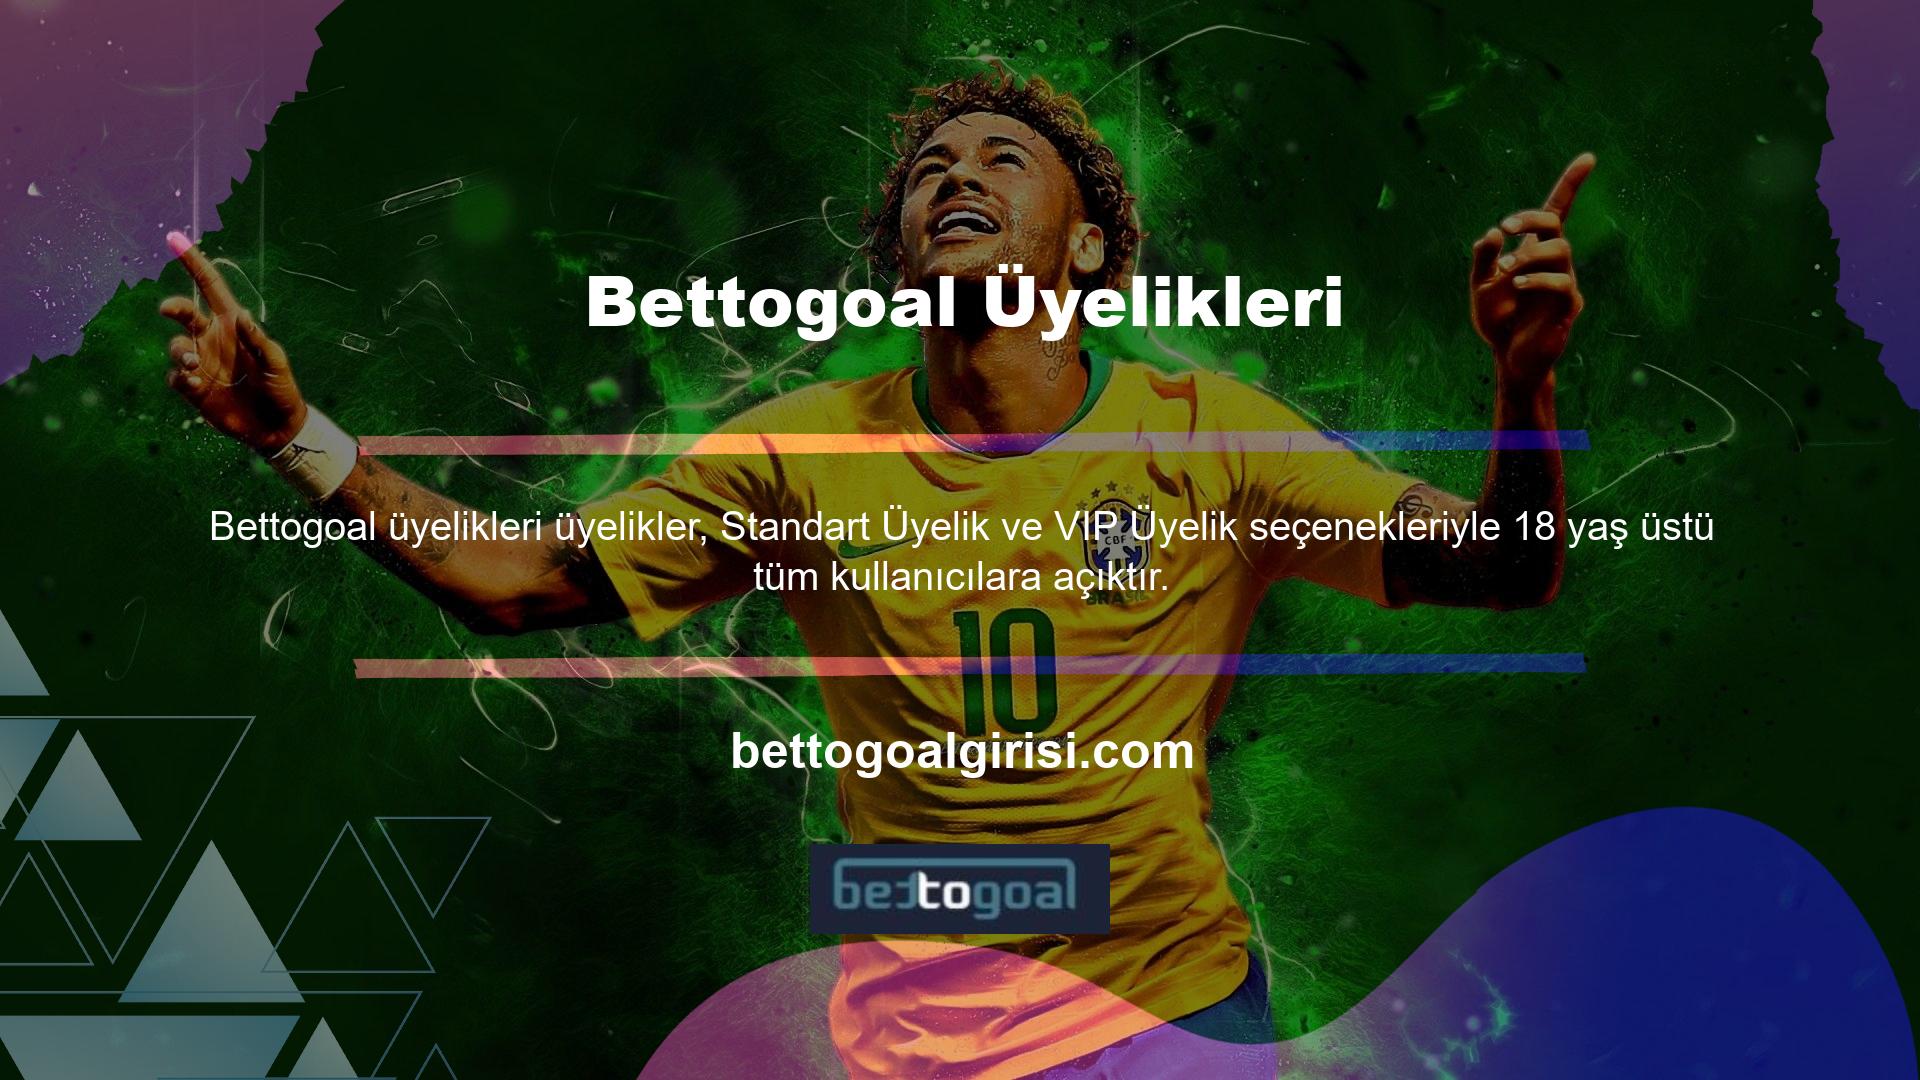 Bettogoal üyelik başvuru formuna site üzerinden ulaşabilirsiniz